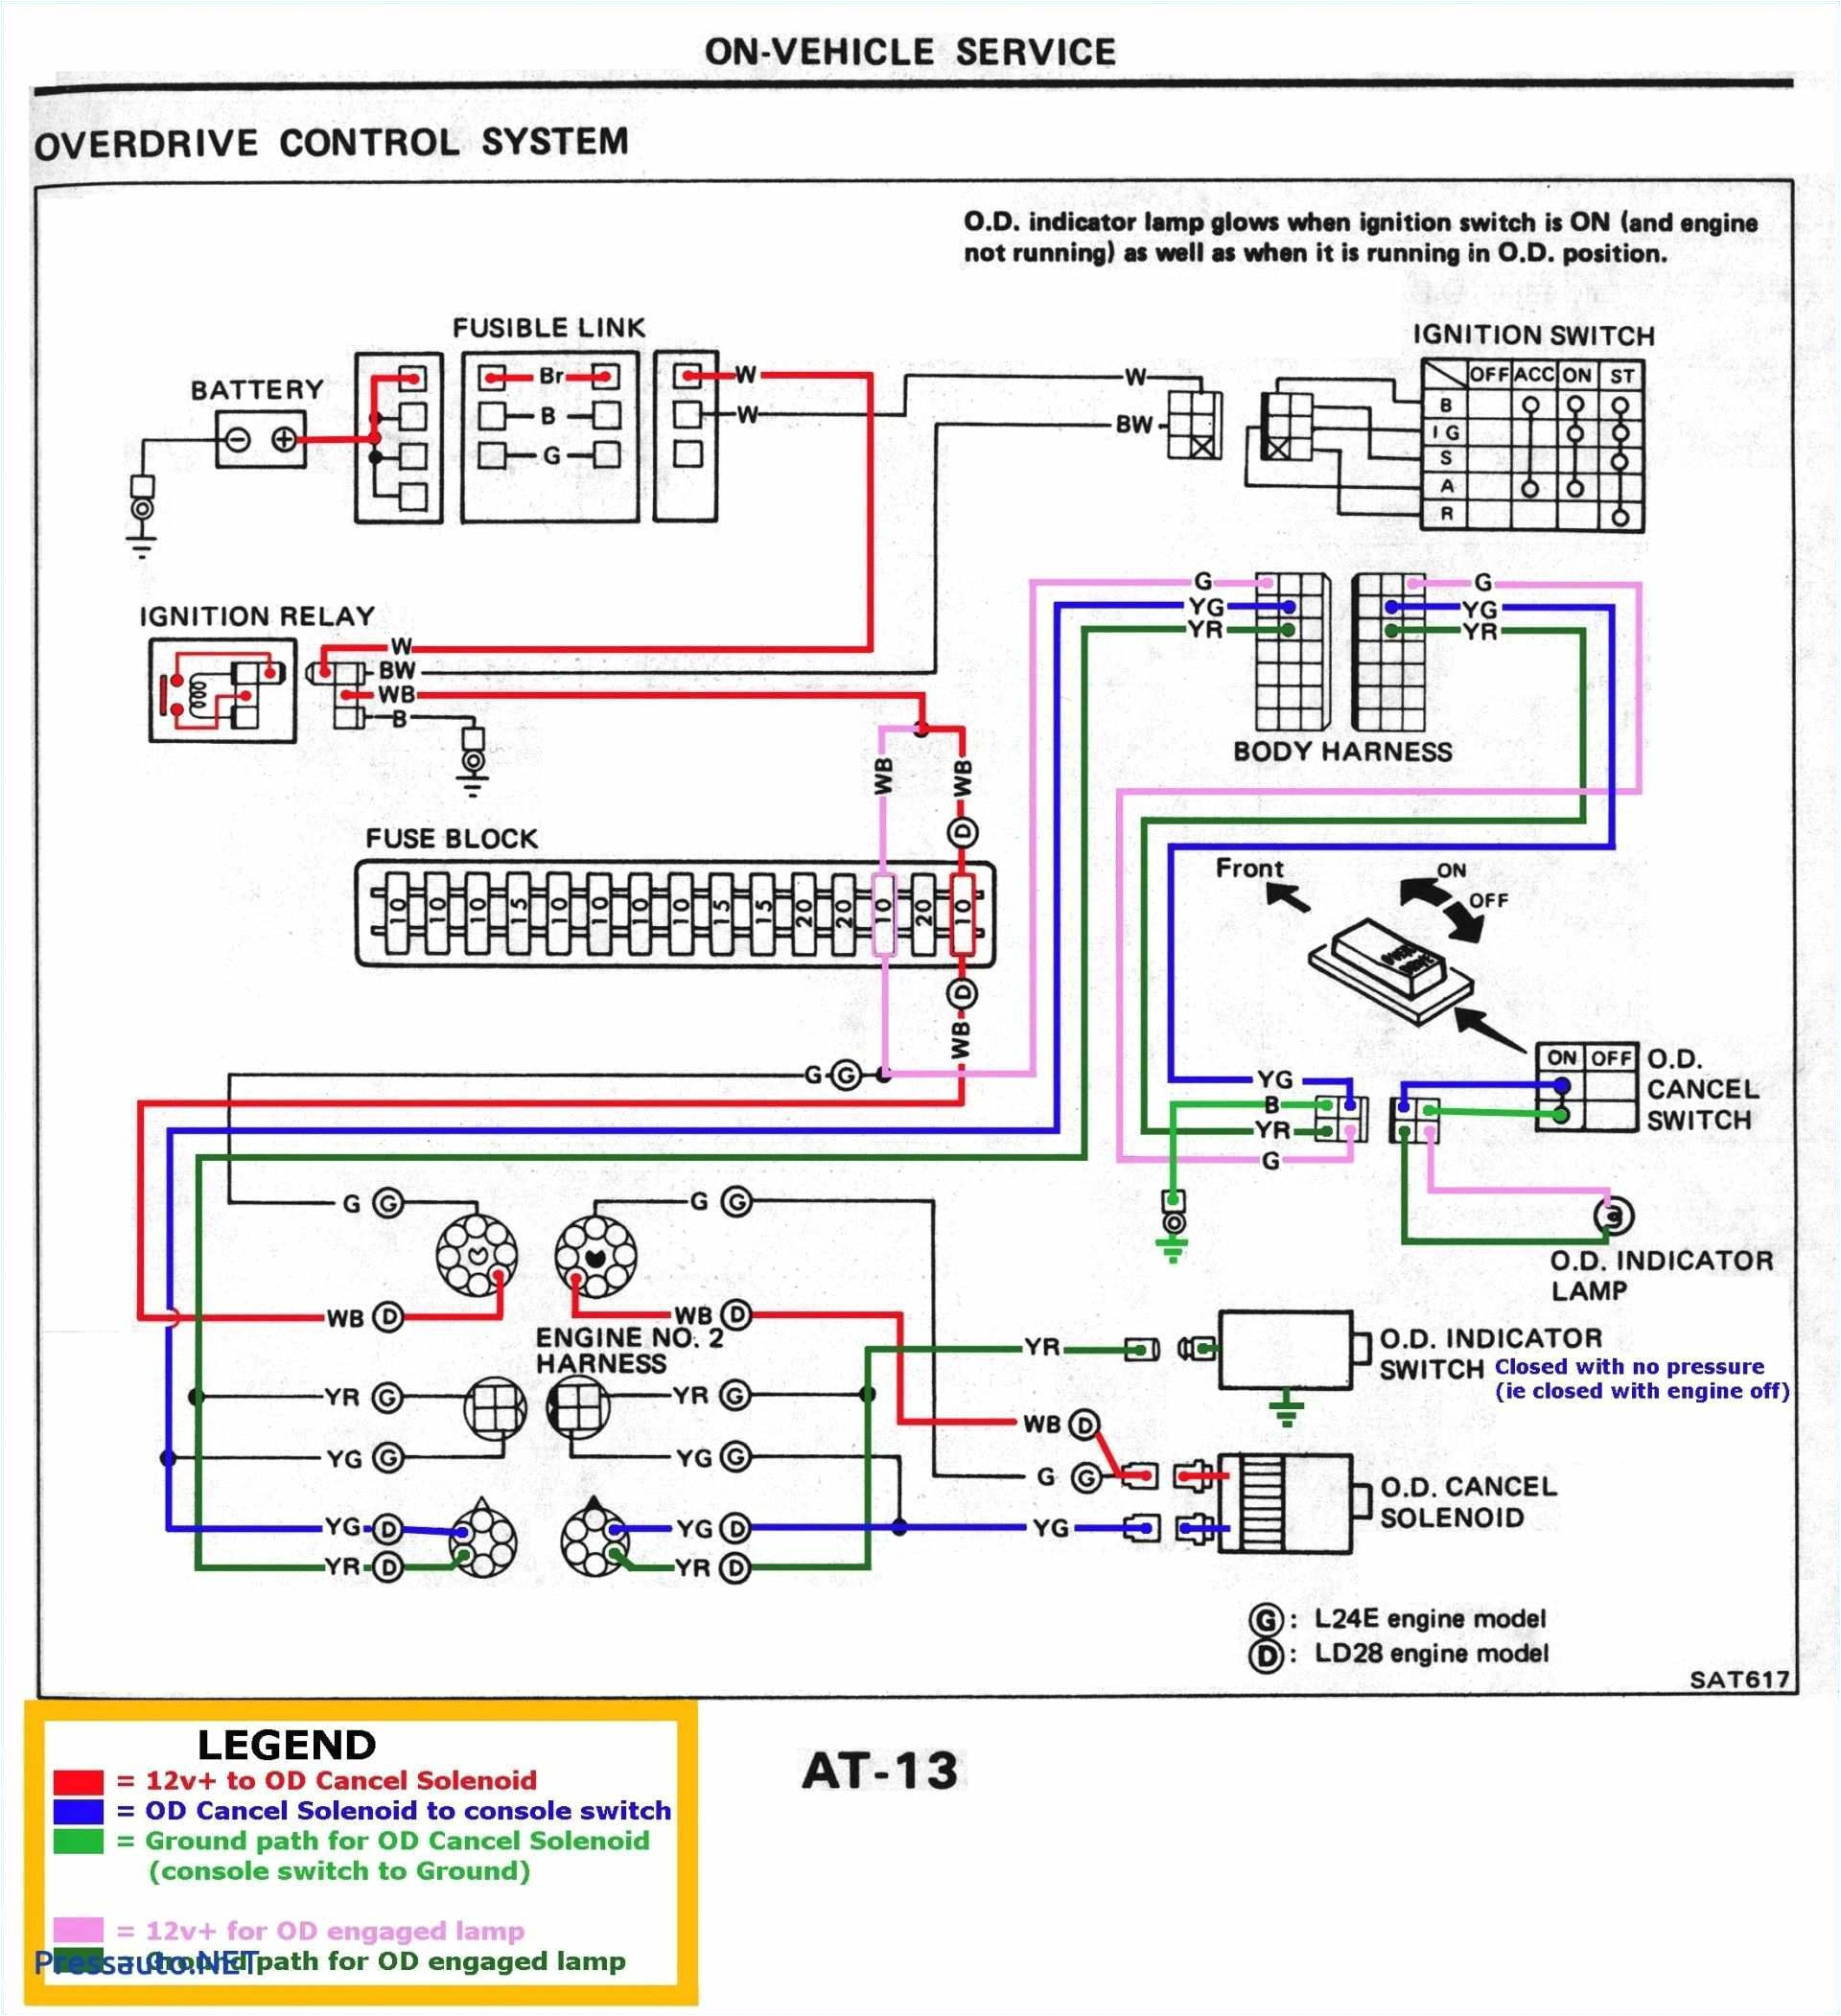 schematic wiring diagram ach 800 wiring diagram blog schematic wiring diagram ach 800